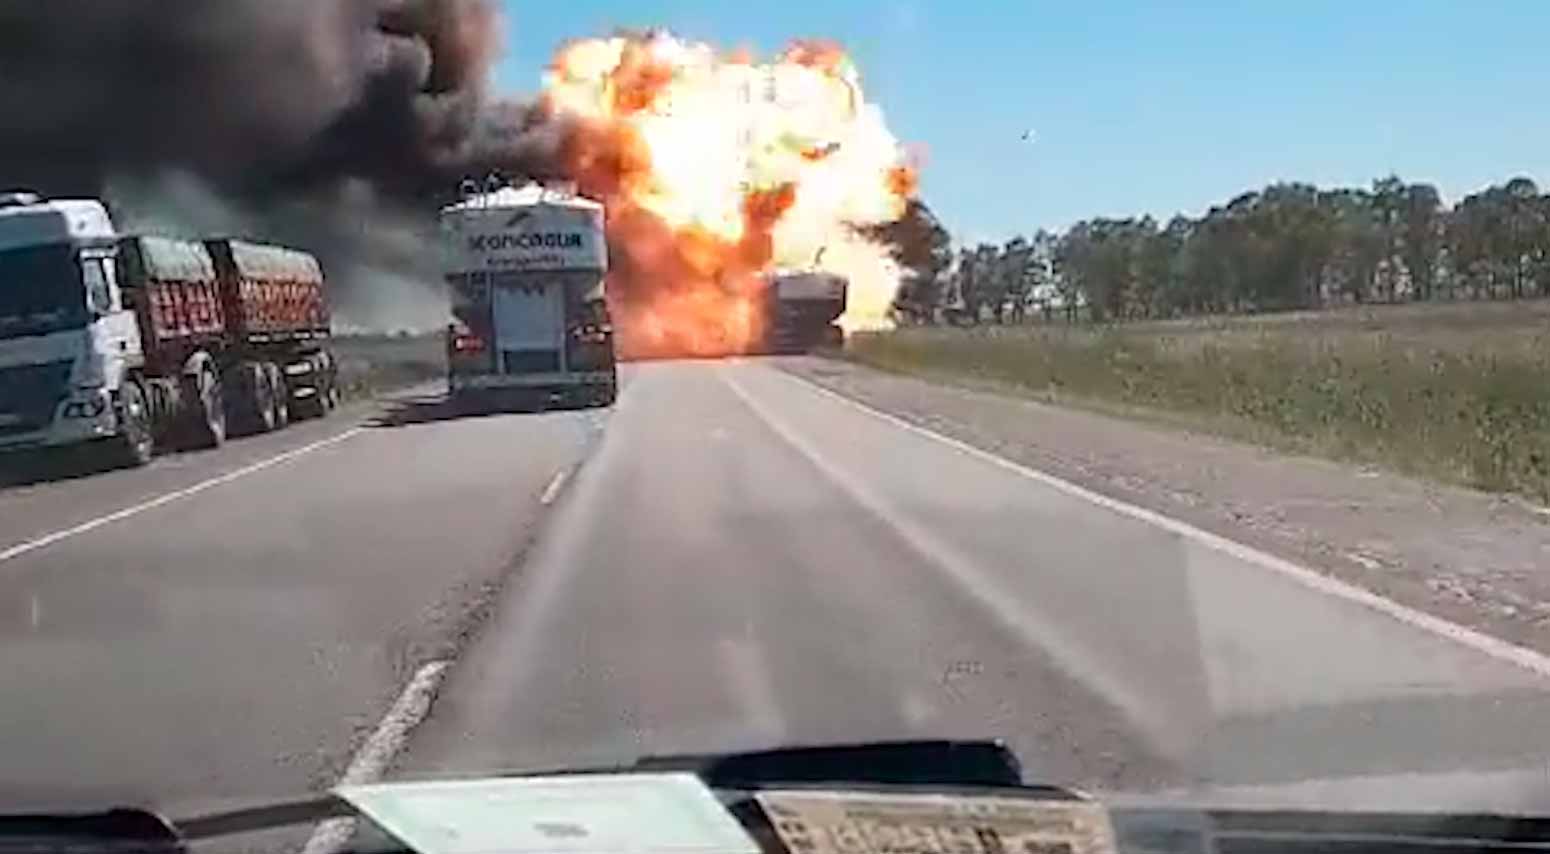 Vídeo muestra el momento en que un camión explota en una carretera en Argentina. Foto y video: Reproducción Twitter @enlamiraradio 